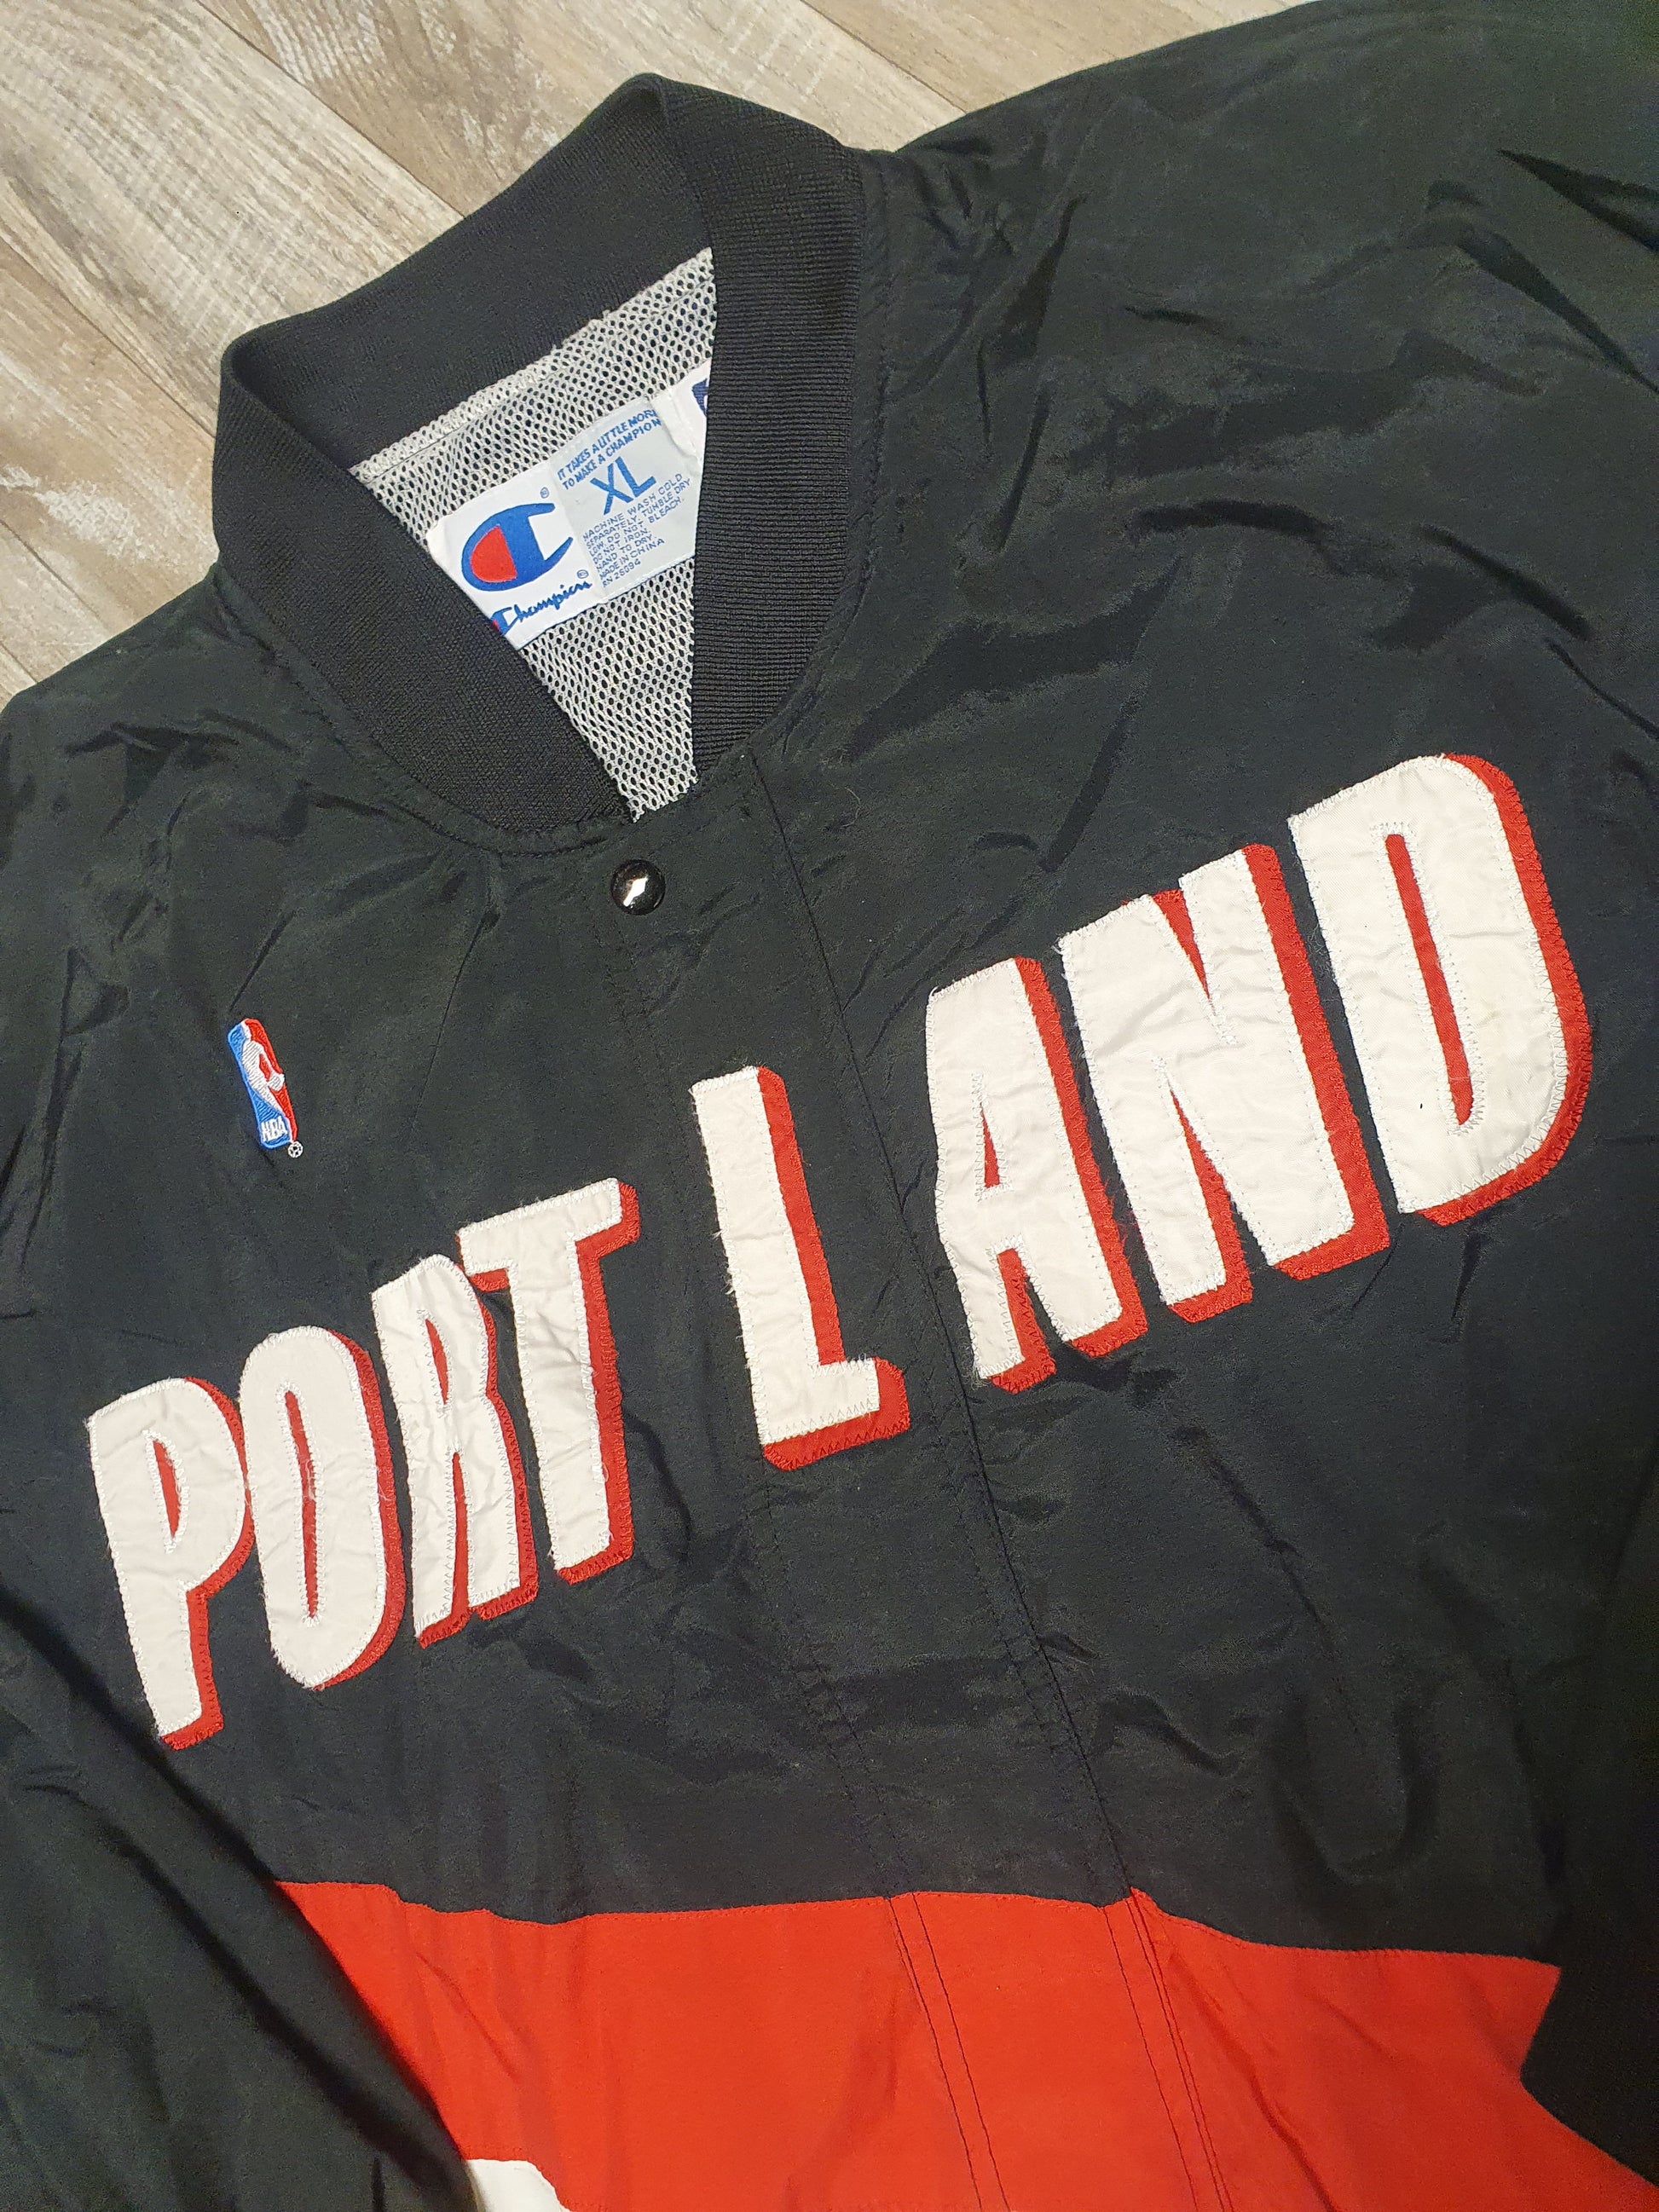 Portland Trailblazers Jacket Size XL